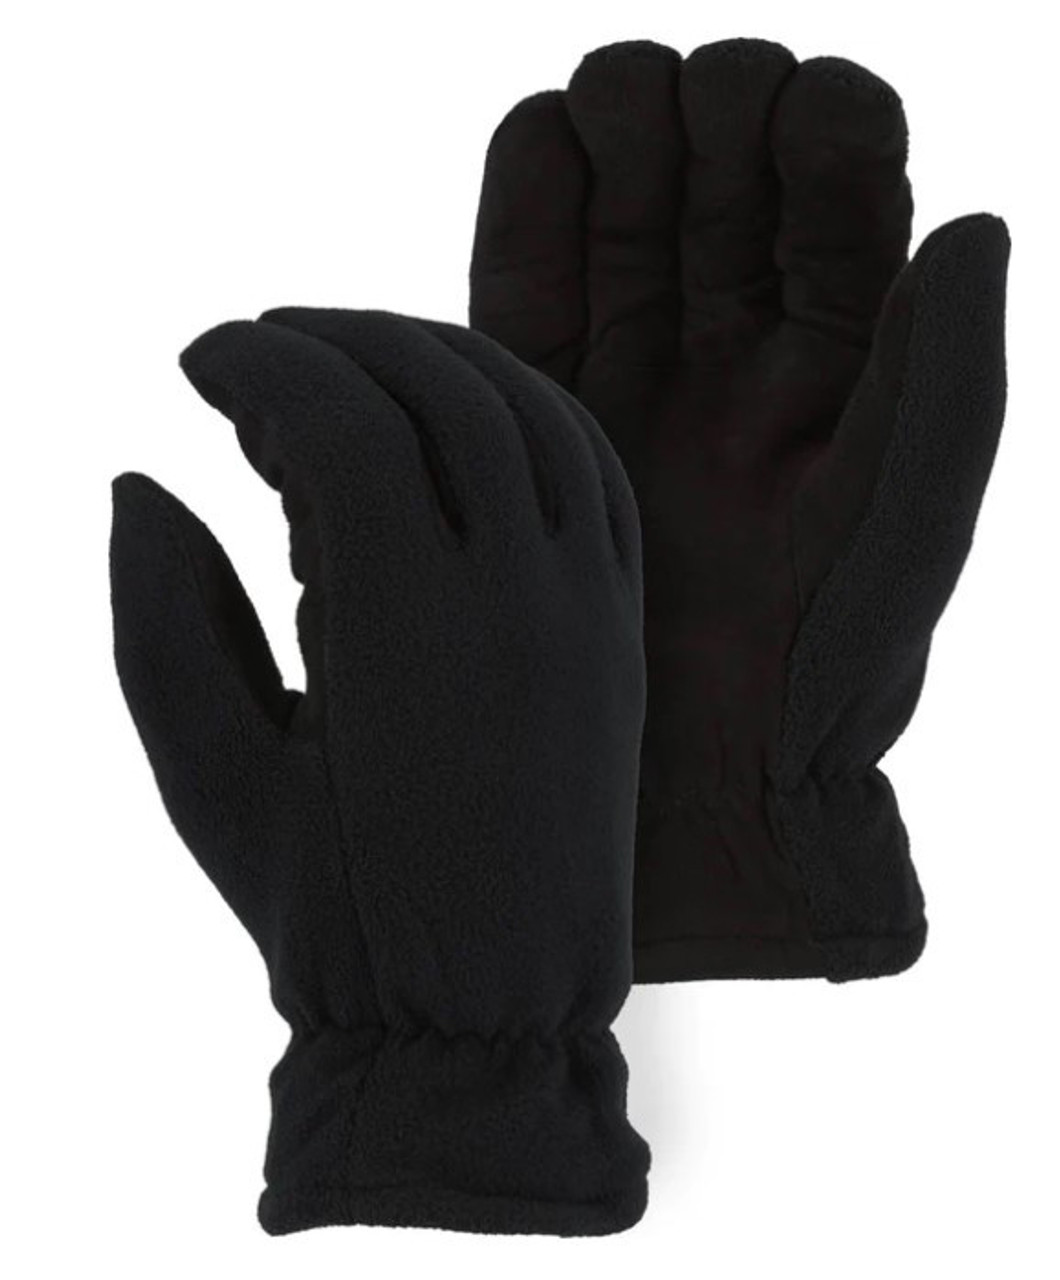 Majestic Glove 1668 Winter Lined Fleece & Split Deerskin Glove (KIDS/YOUTH SIZES)